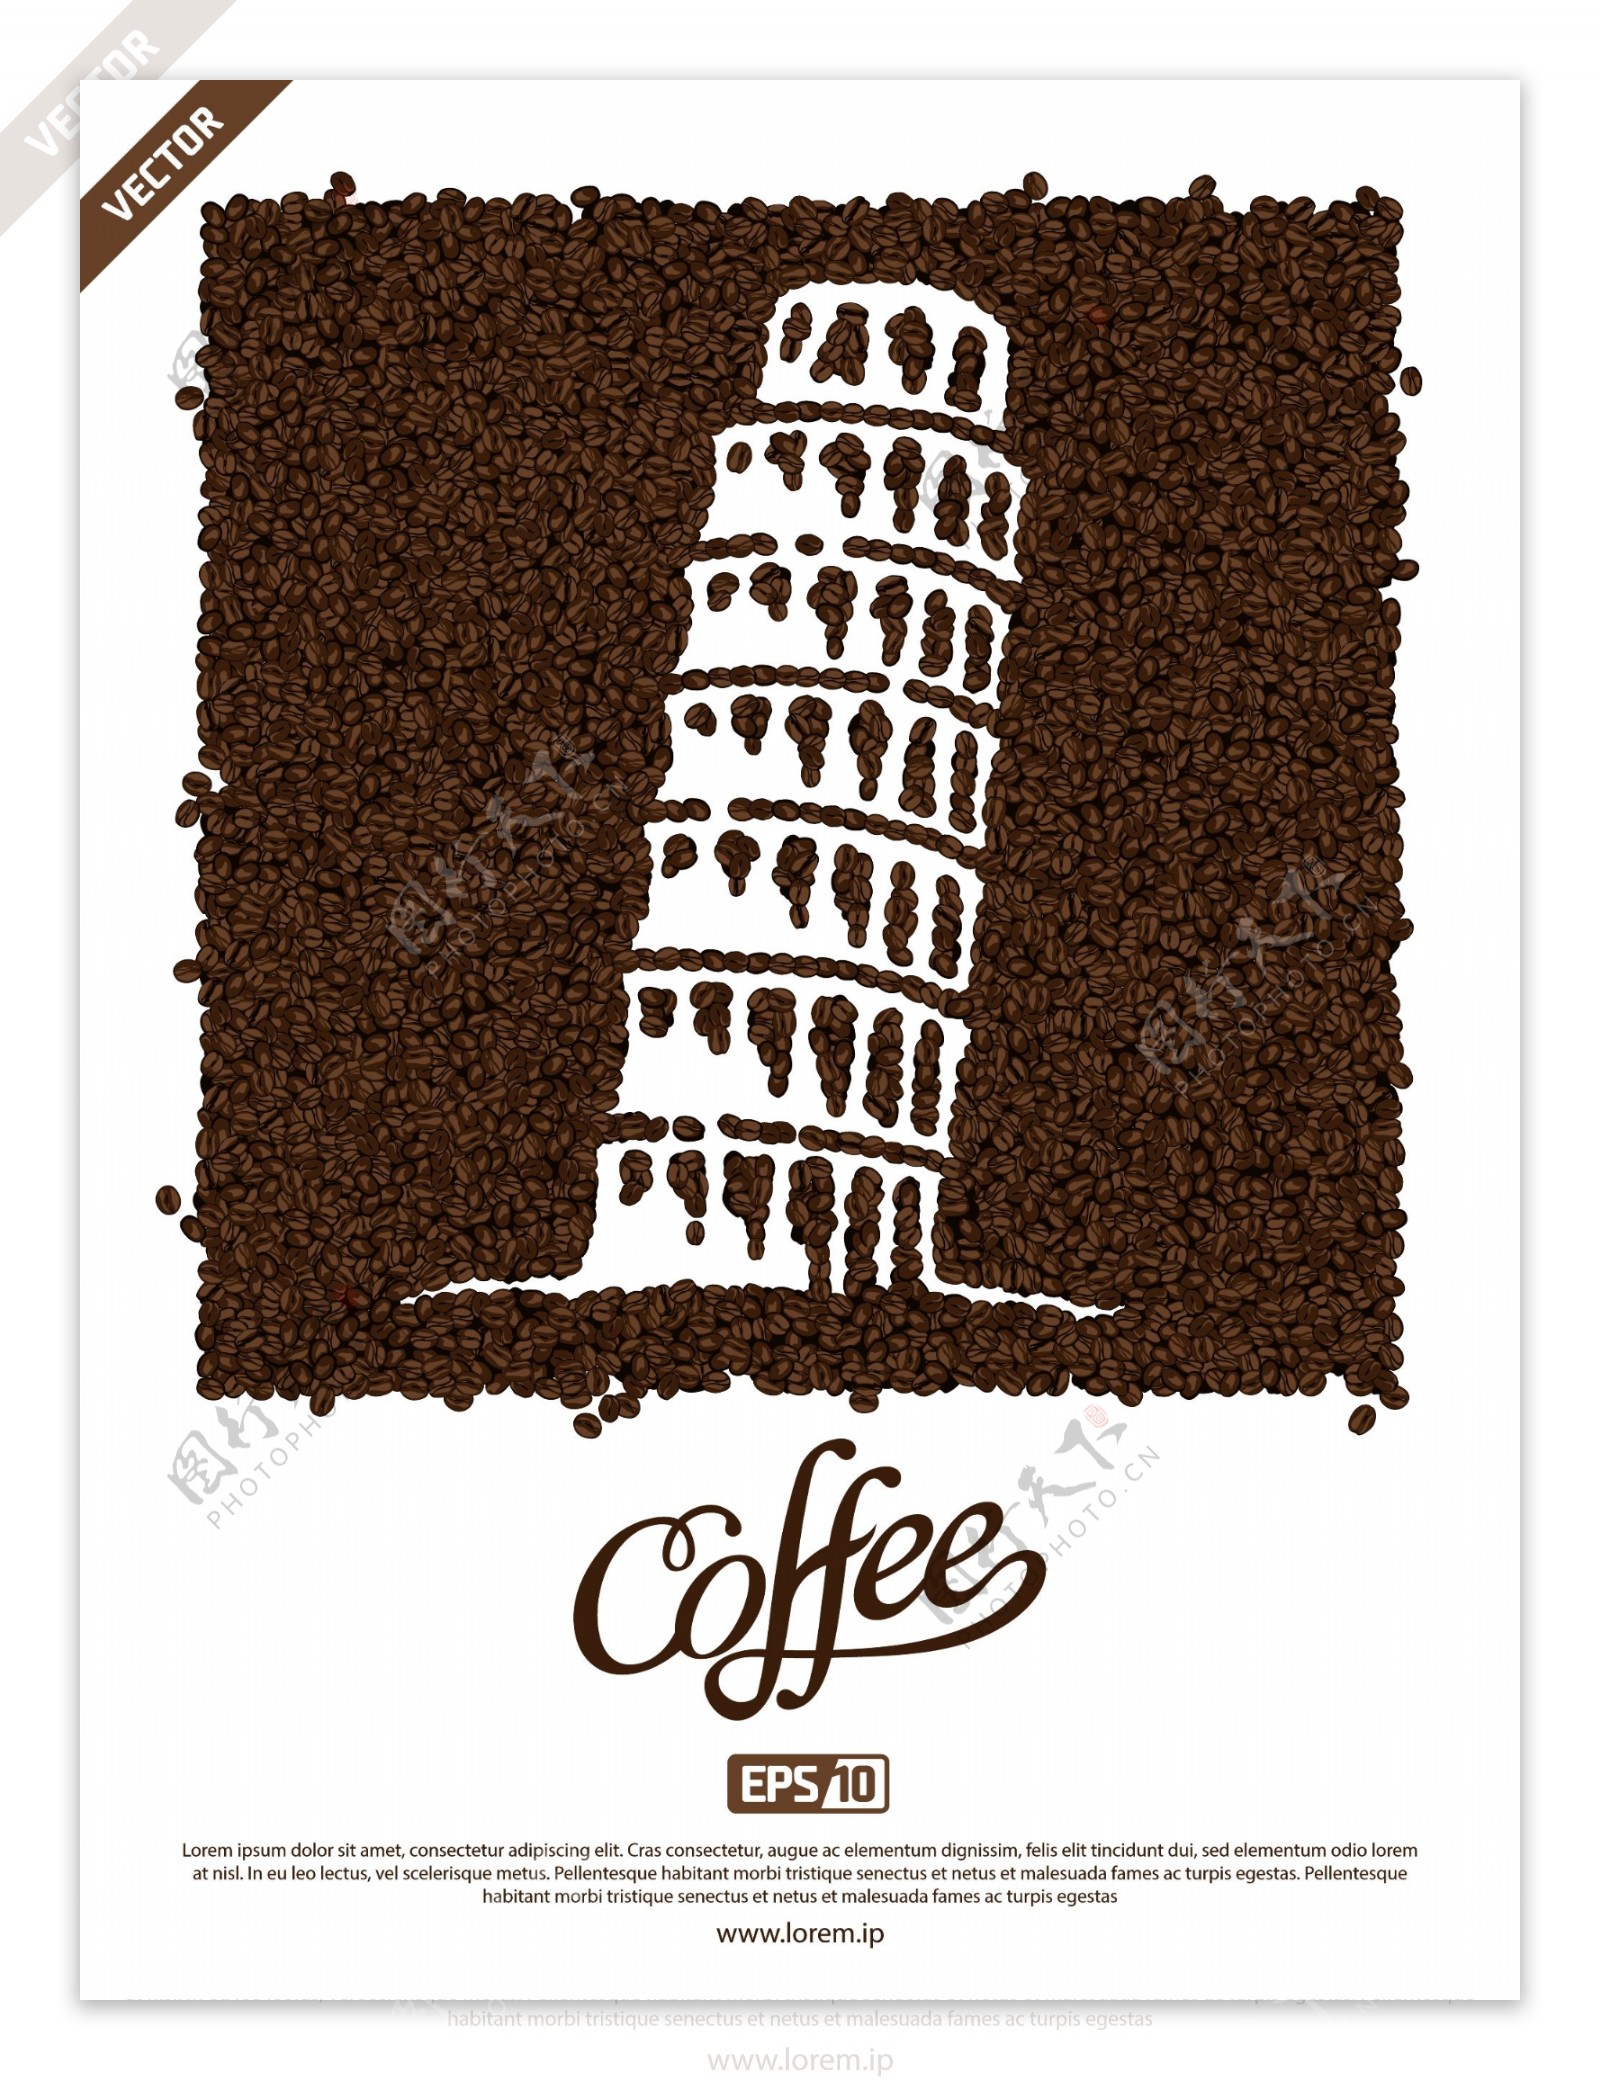 咖啡豆海报图片